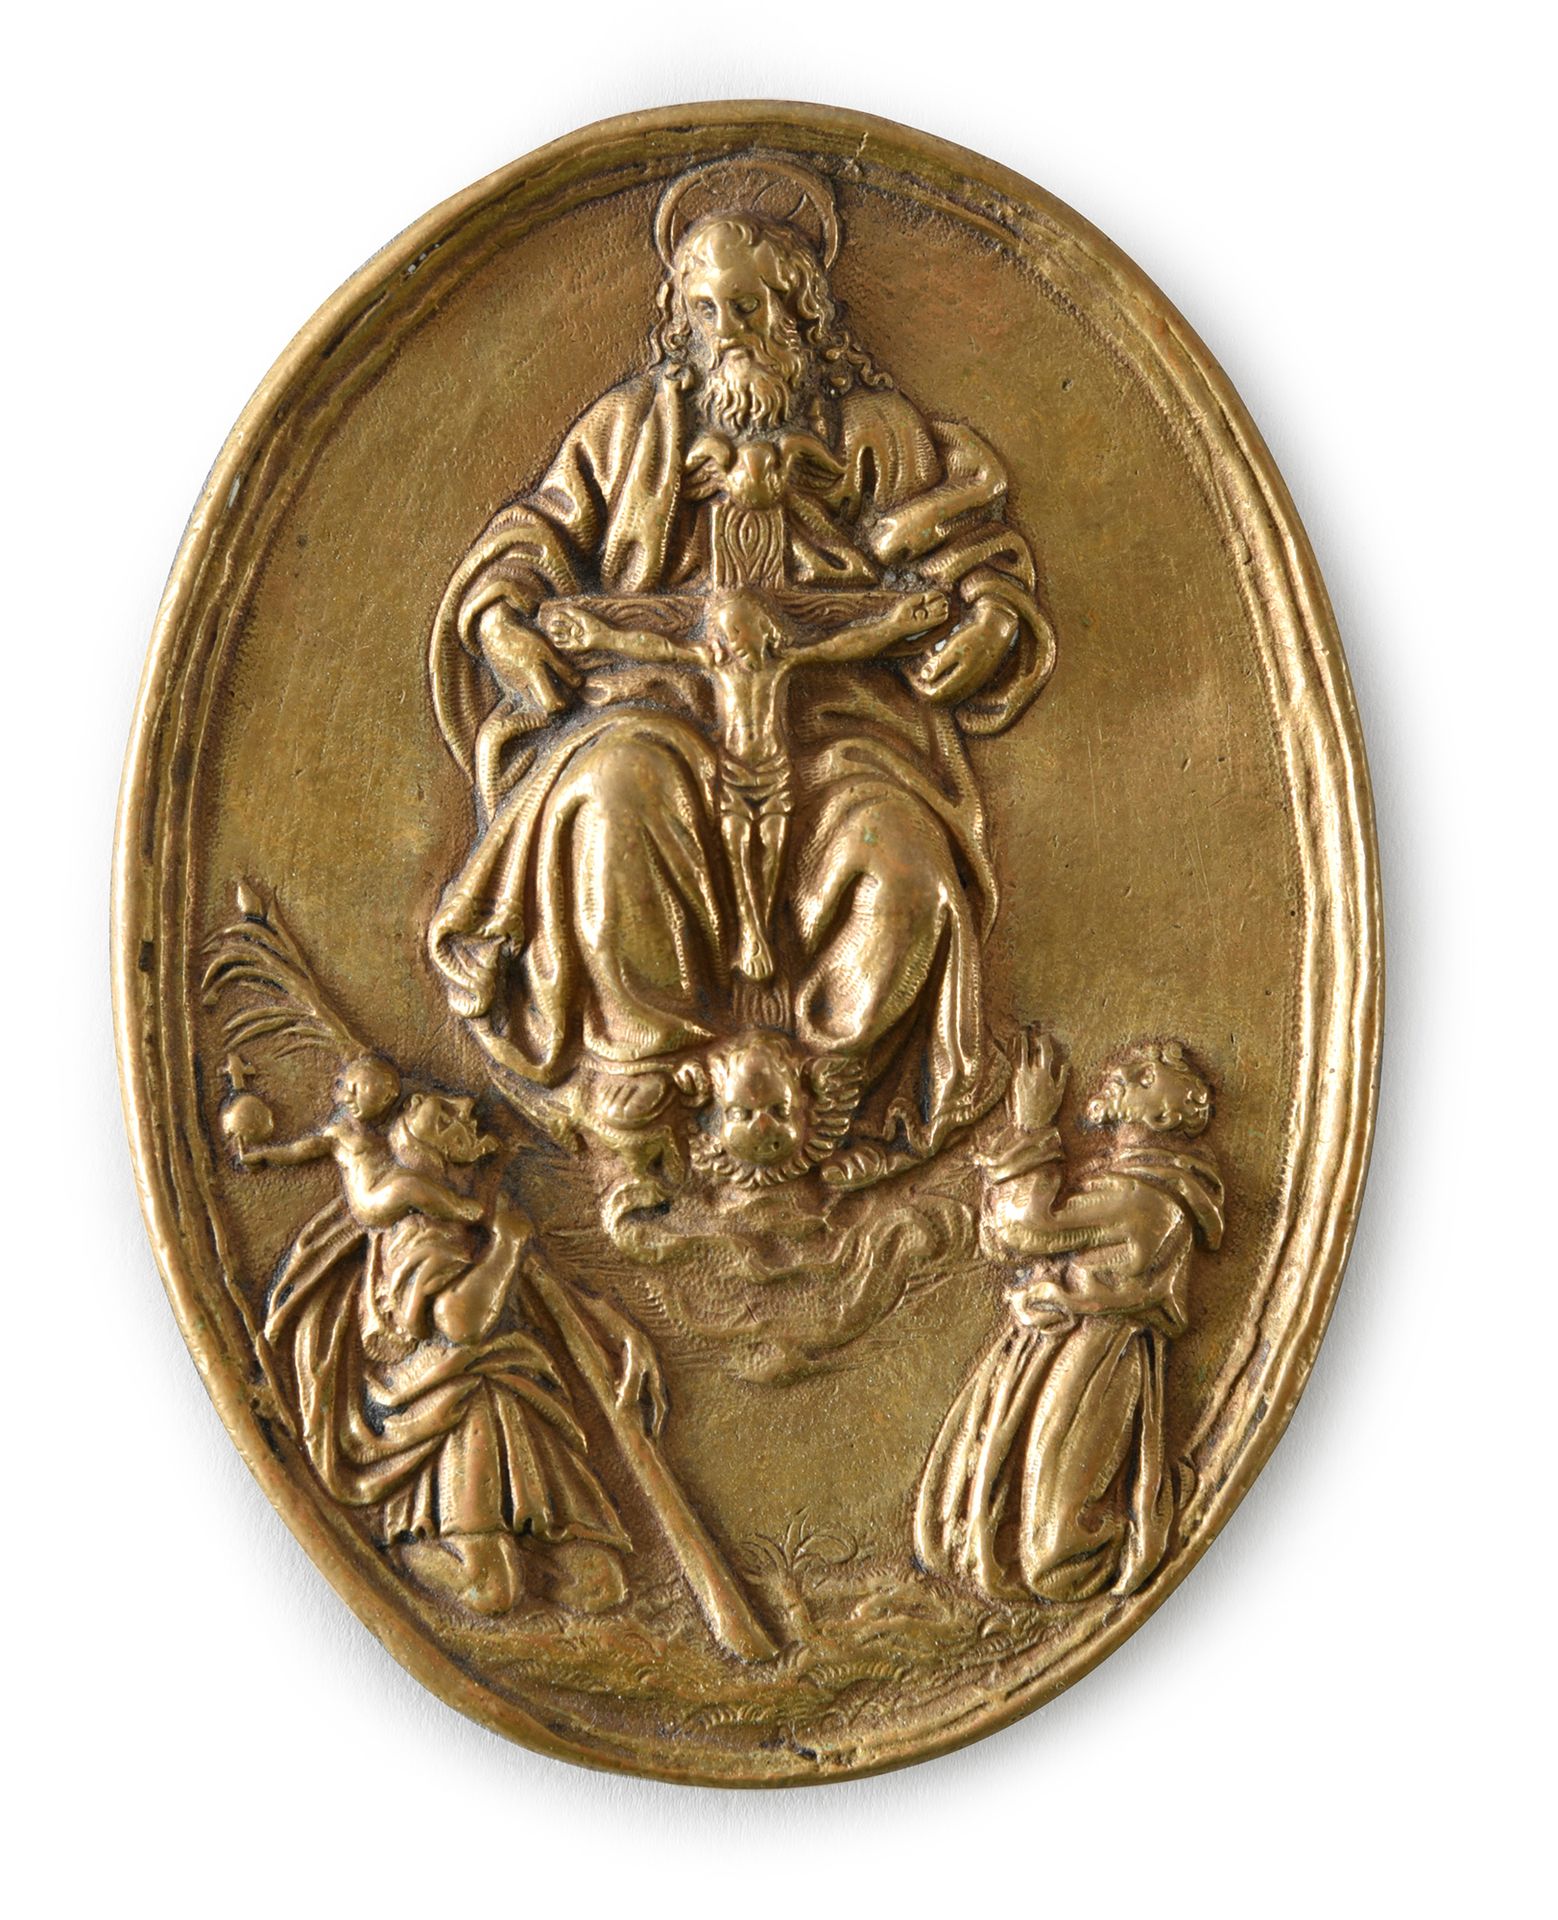 Espagne, début du XVIIe siècle 
Plaque pectorale en bronze de forme ovale représ&hellip;